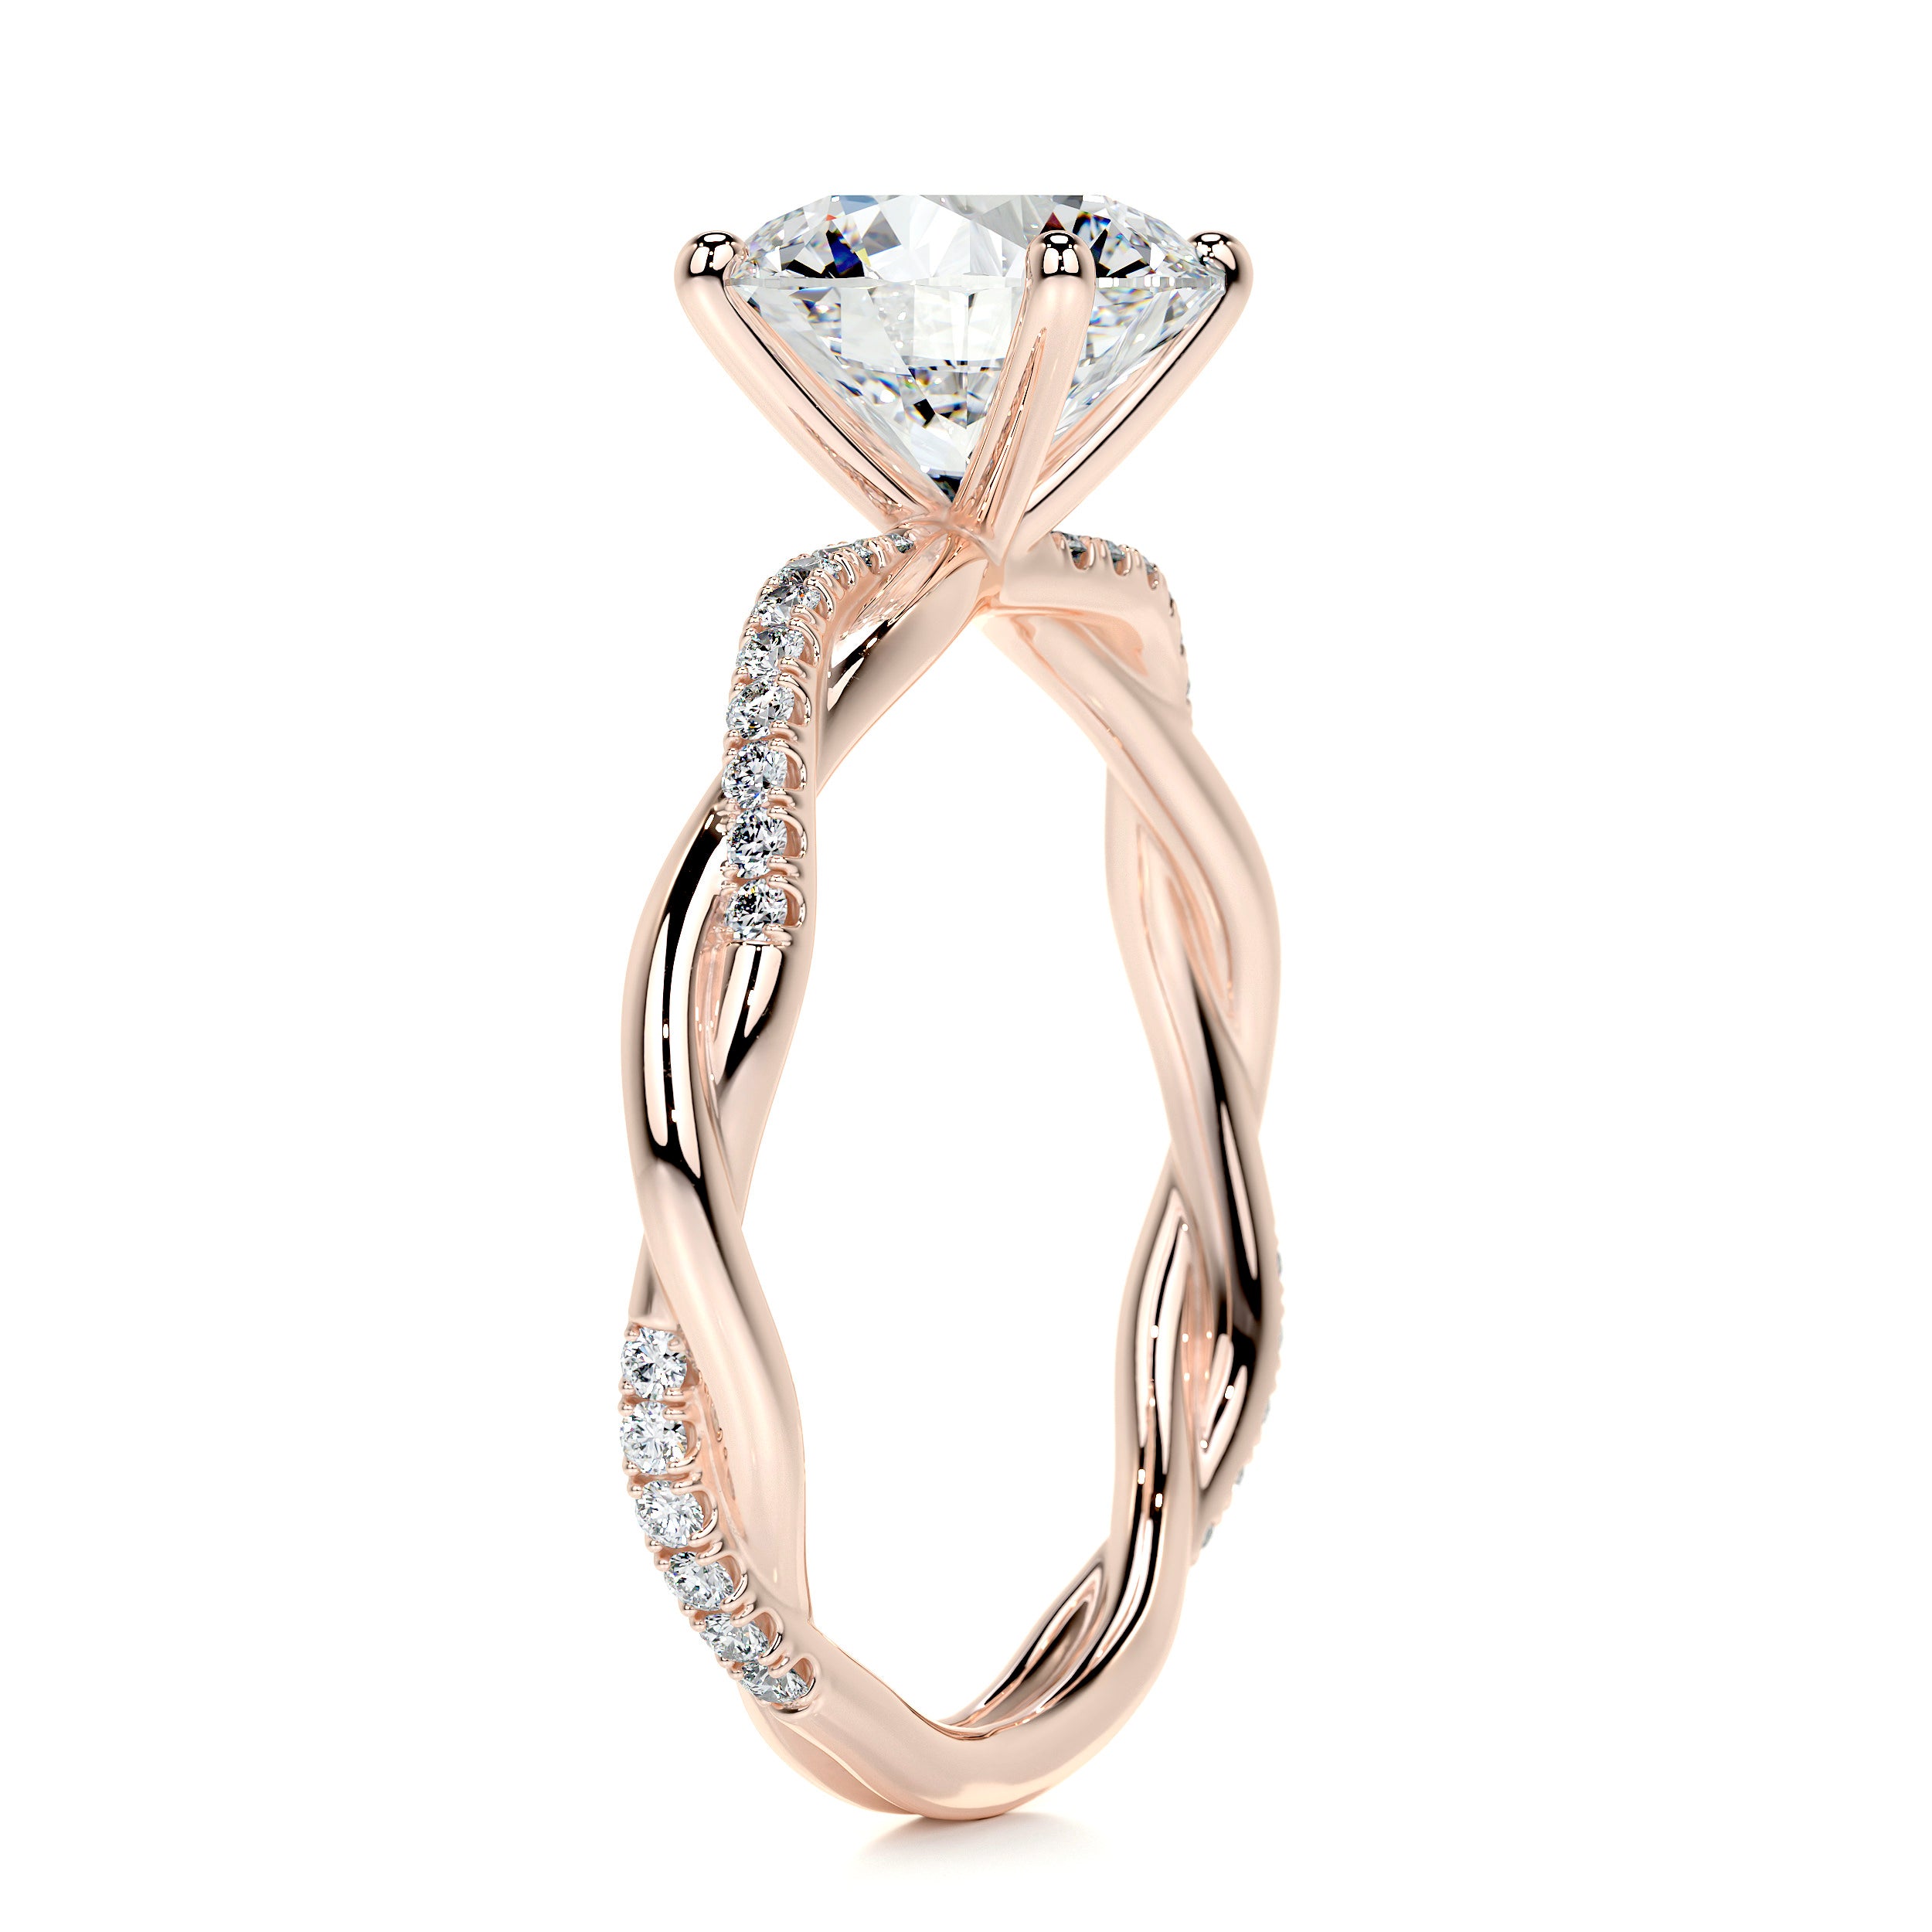 Crystal Diamond Engagement Ring   (1.8 Carat) -14K Rose Gold